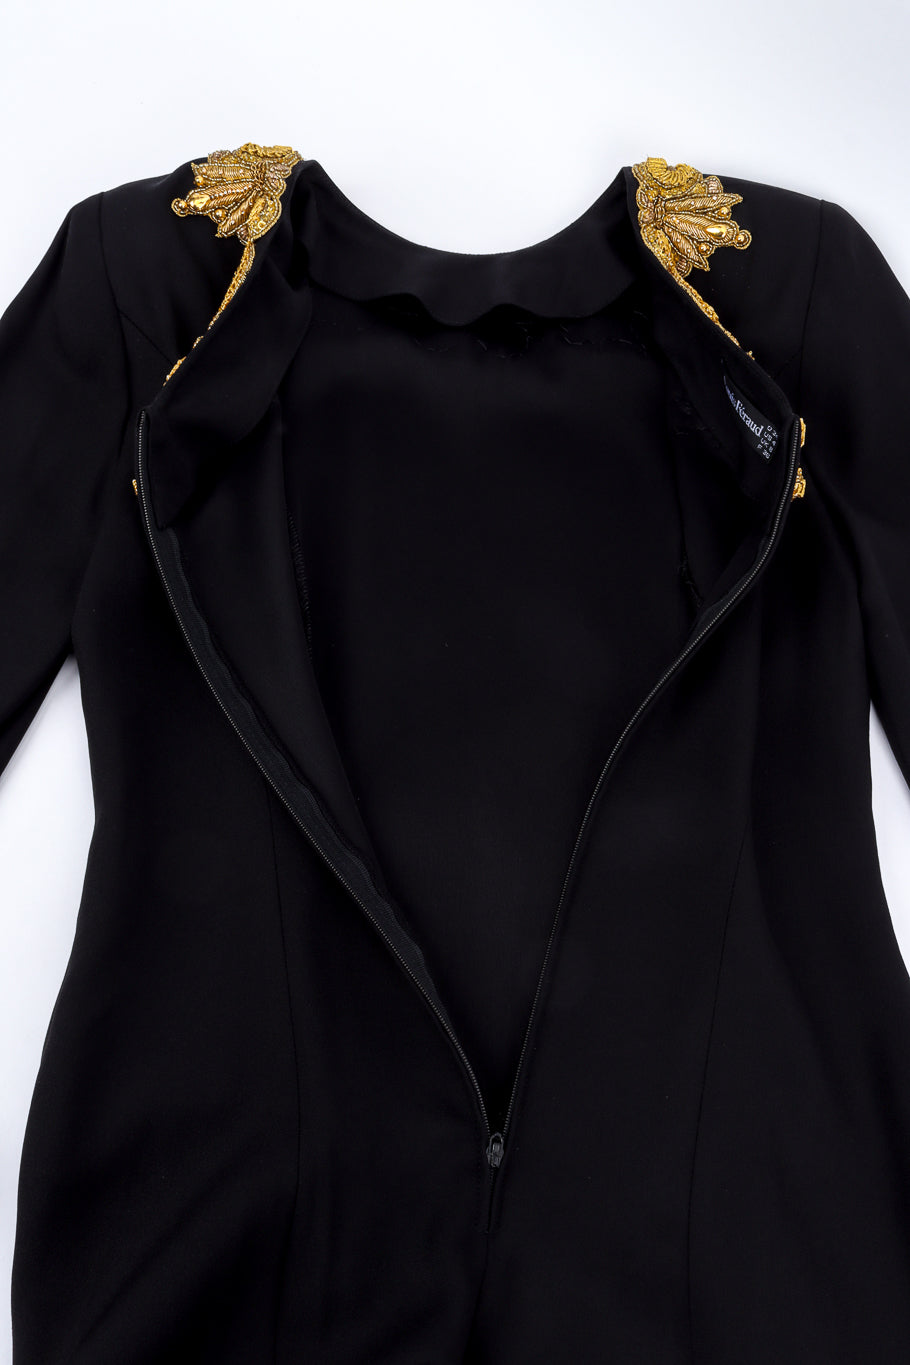 Vintage Louis Féraud Gilded Soutache Trim Dress back unzipped @recess la